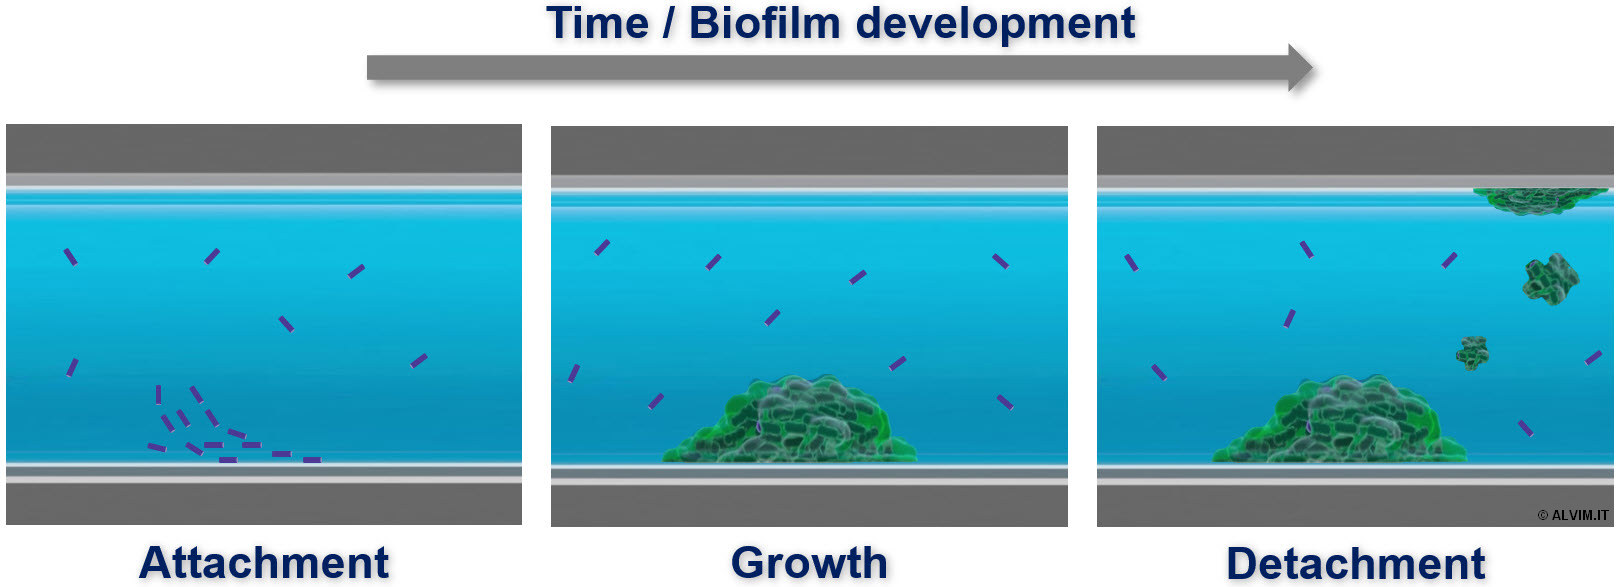 Formación y desarrollo de biopelículas con el tiempo.